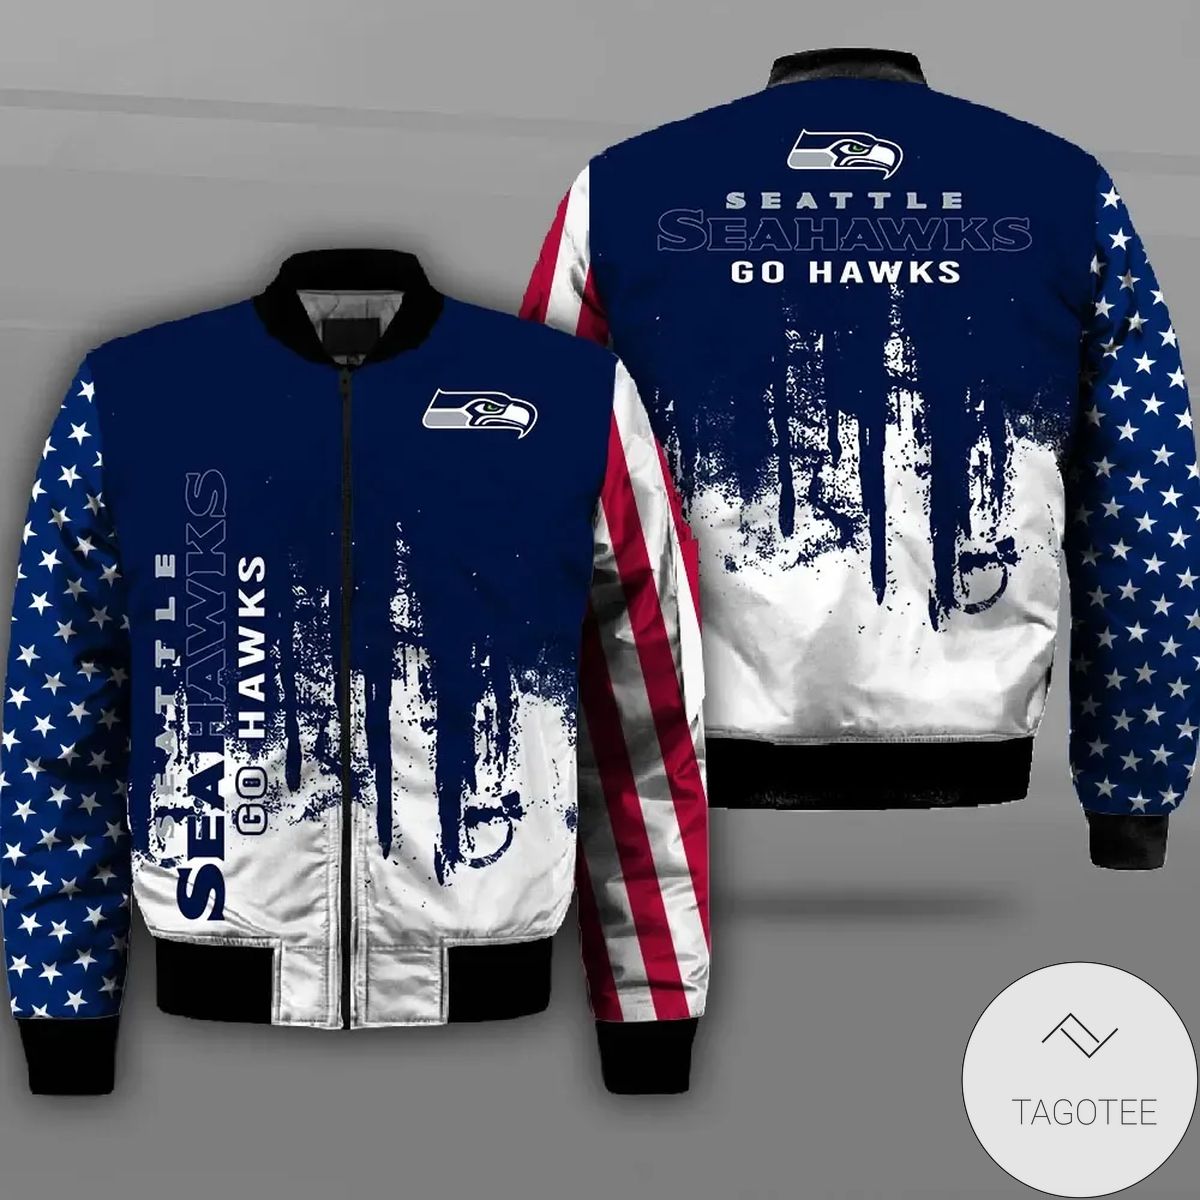 Seattle Seahawks Flag Professional Football Team 3d Printed Unisex Bomber Jacket